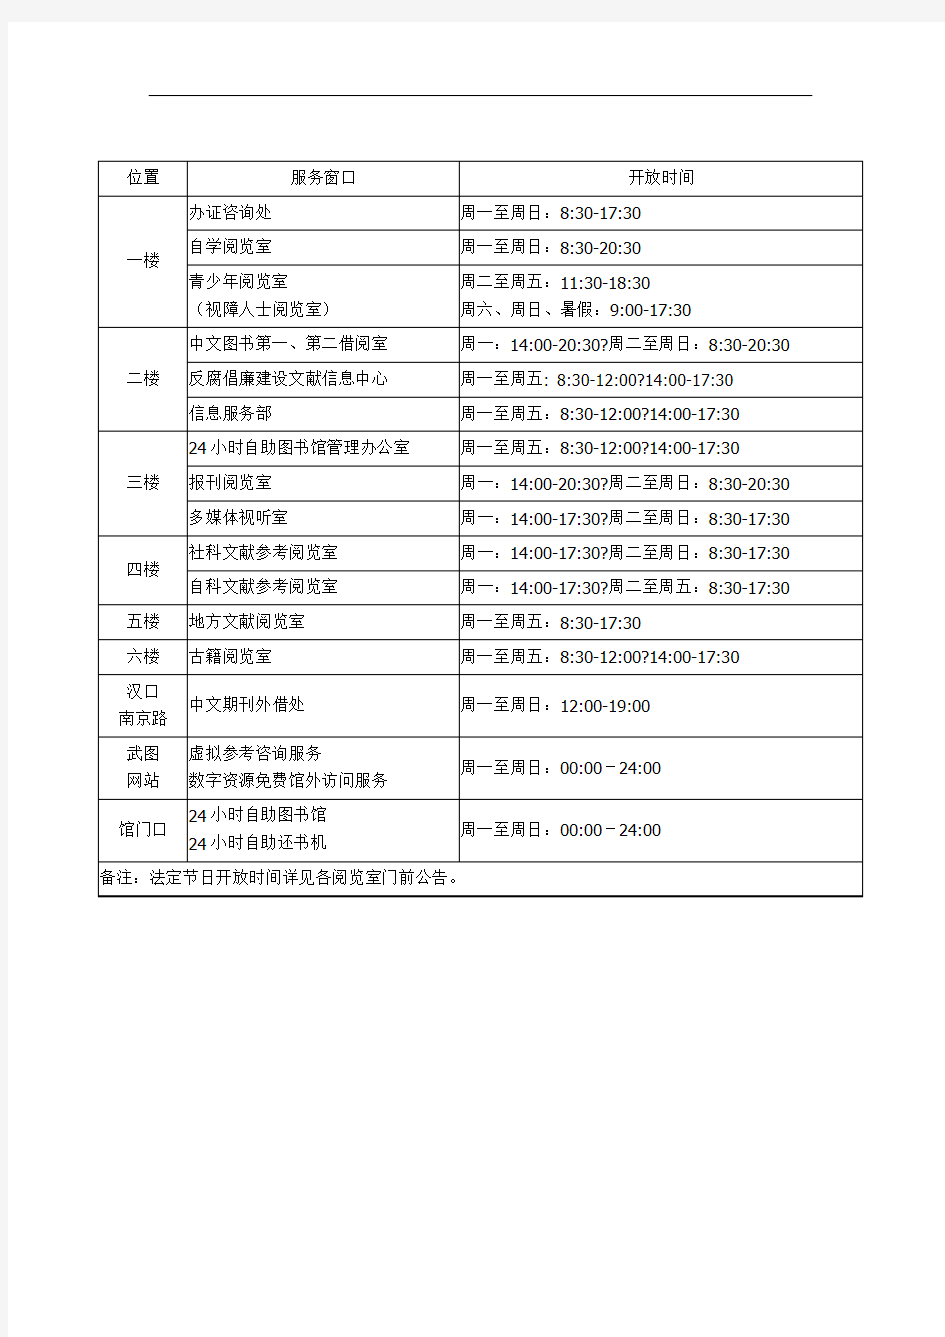 武汉图书馆开放时间表修订版